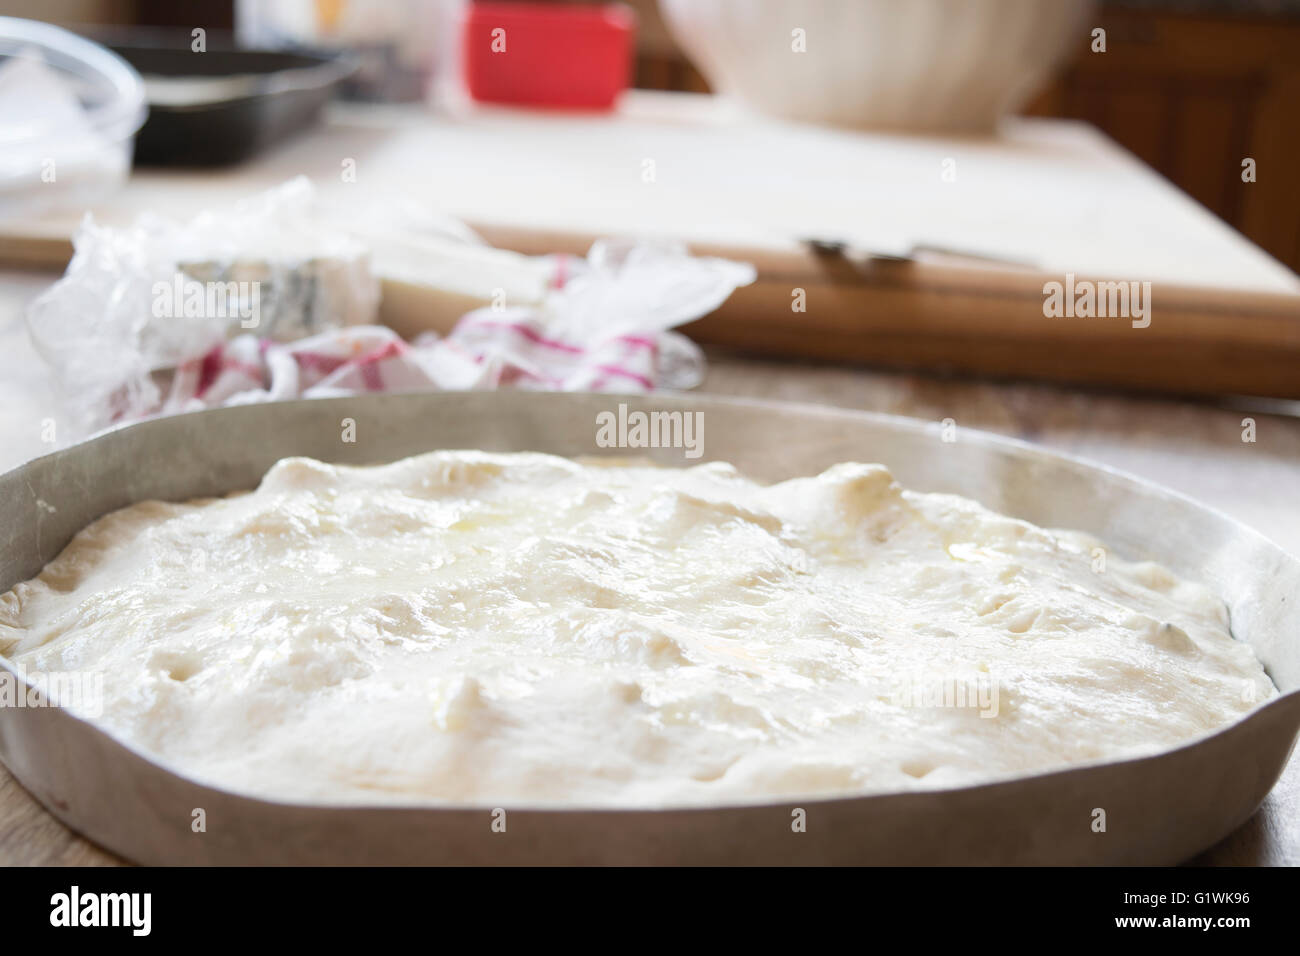 preparing dough pizza Stock Photo